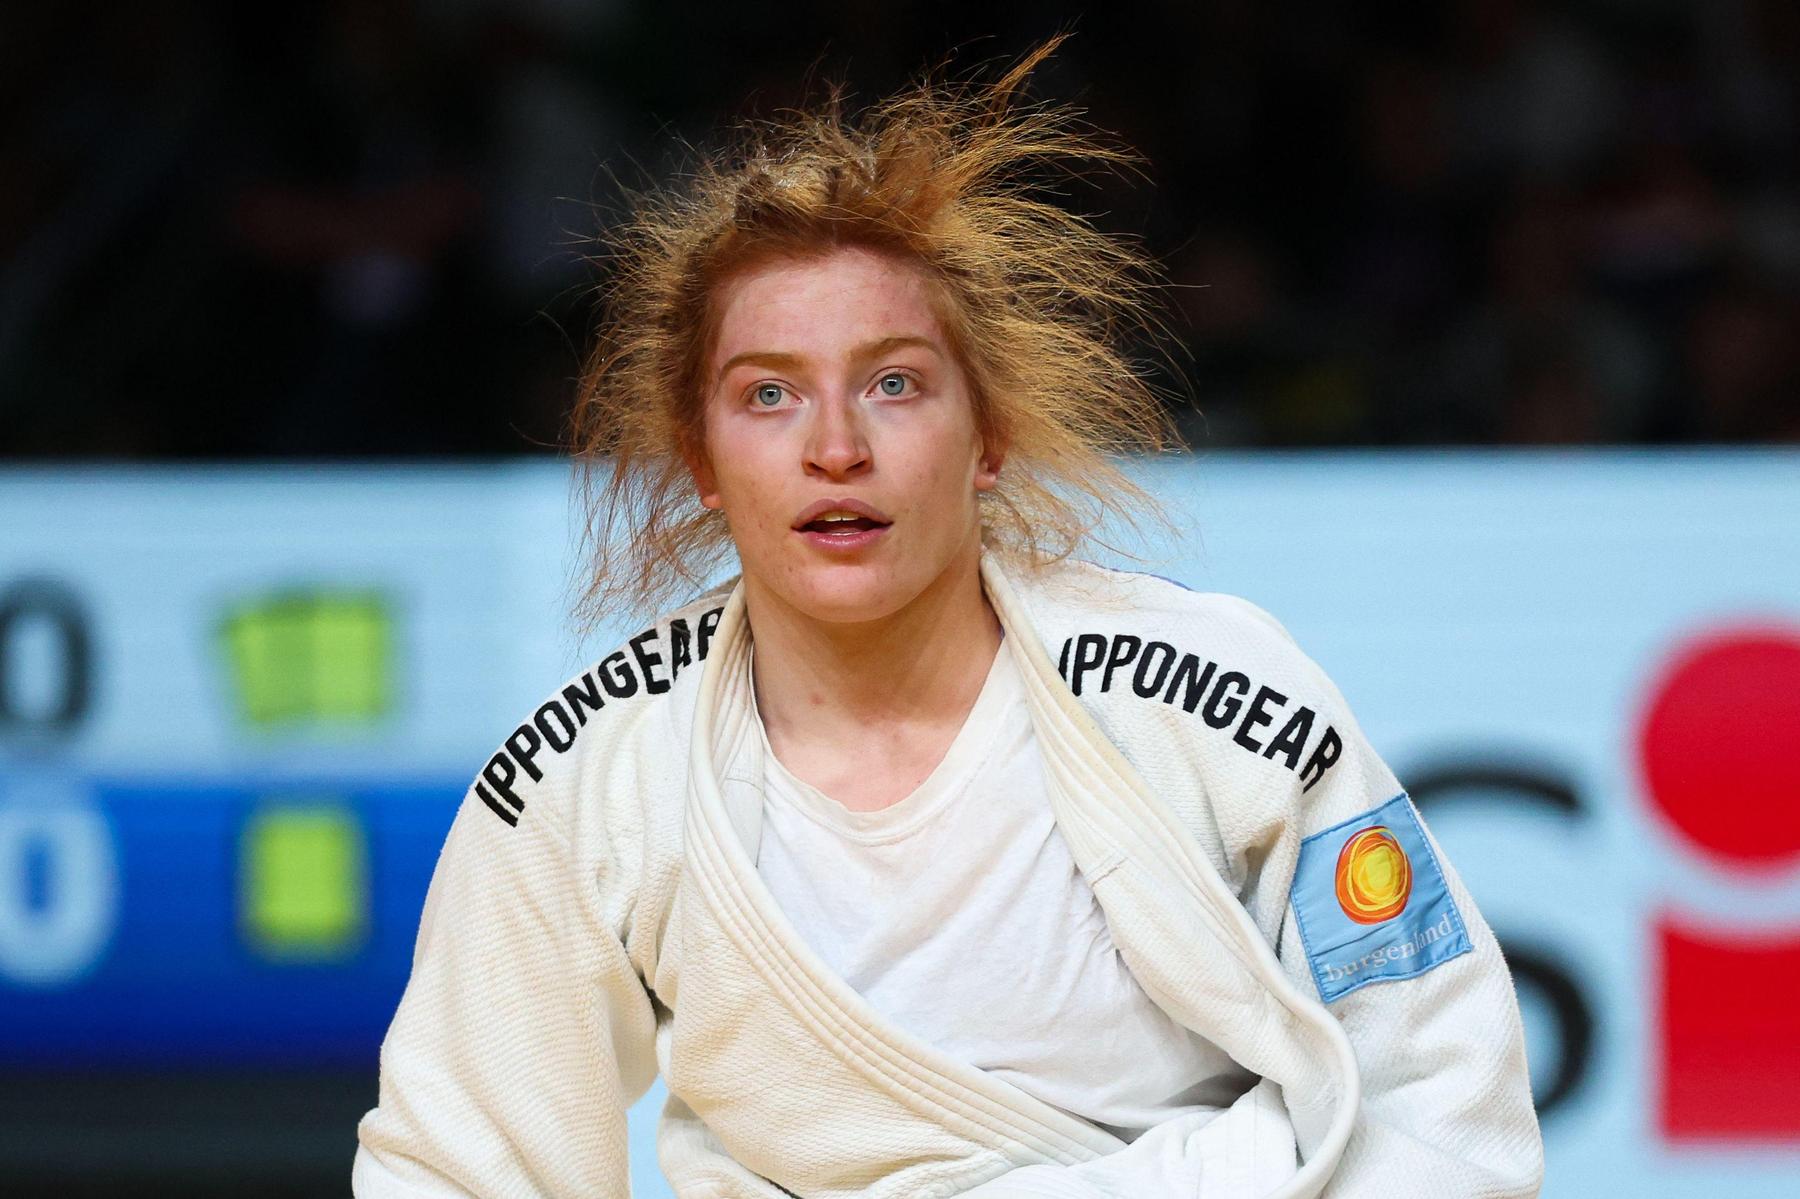 österreichs judoka räumen bei grand slam ab